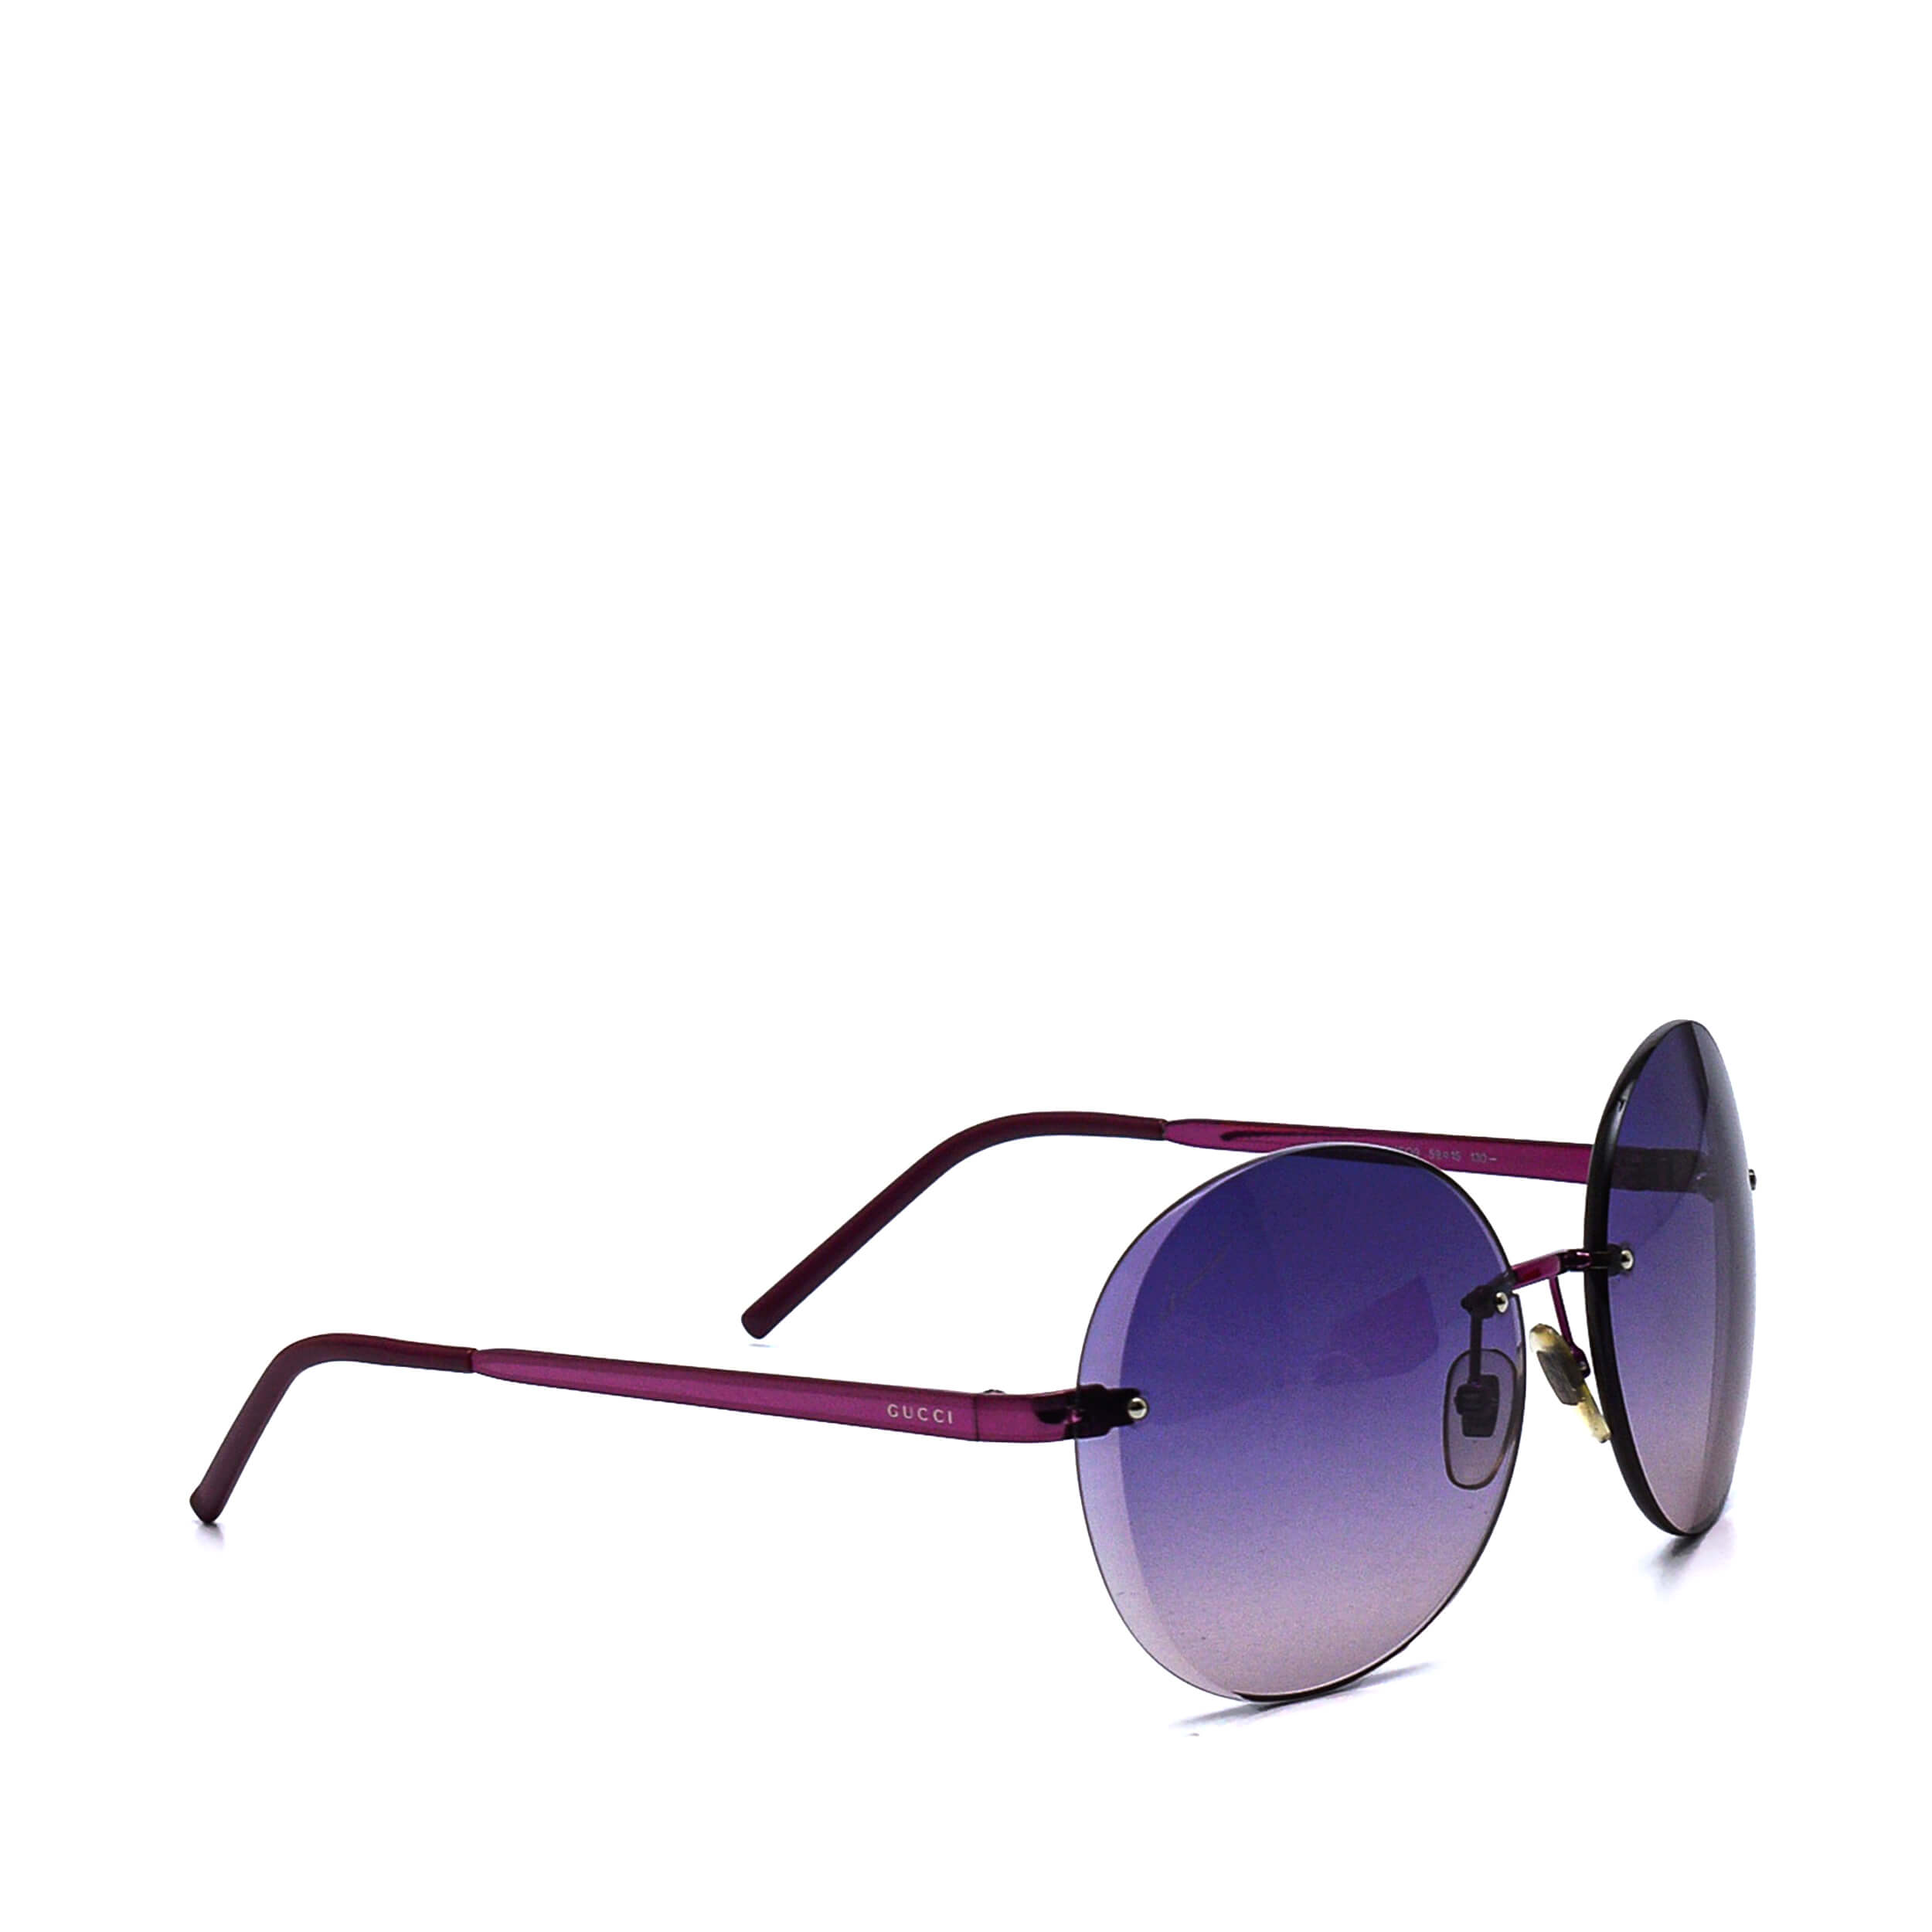 Gucci- Purple Round Sunglasses